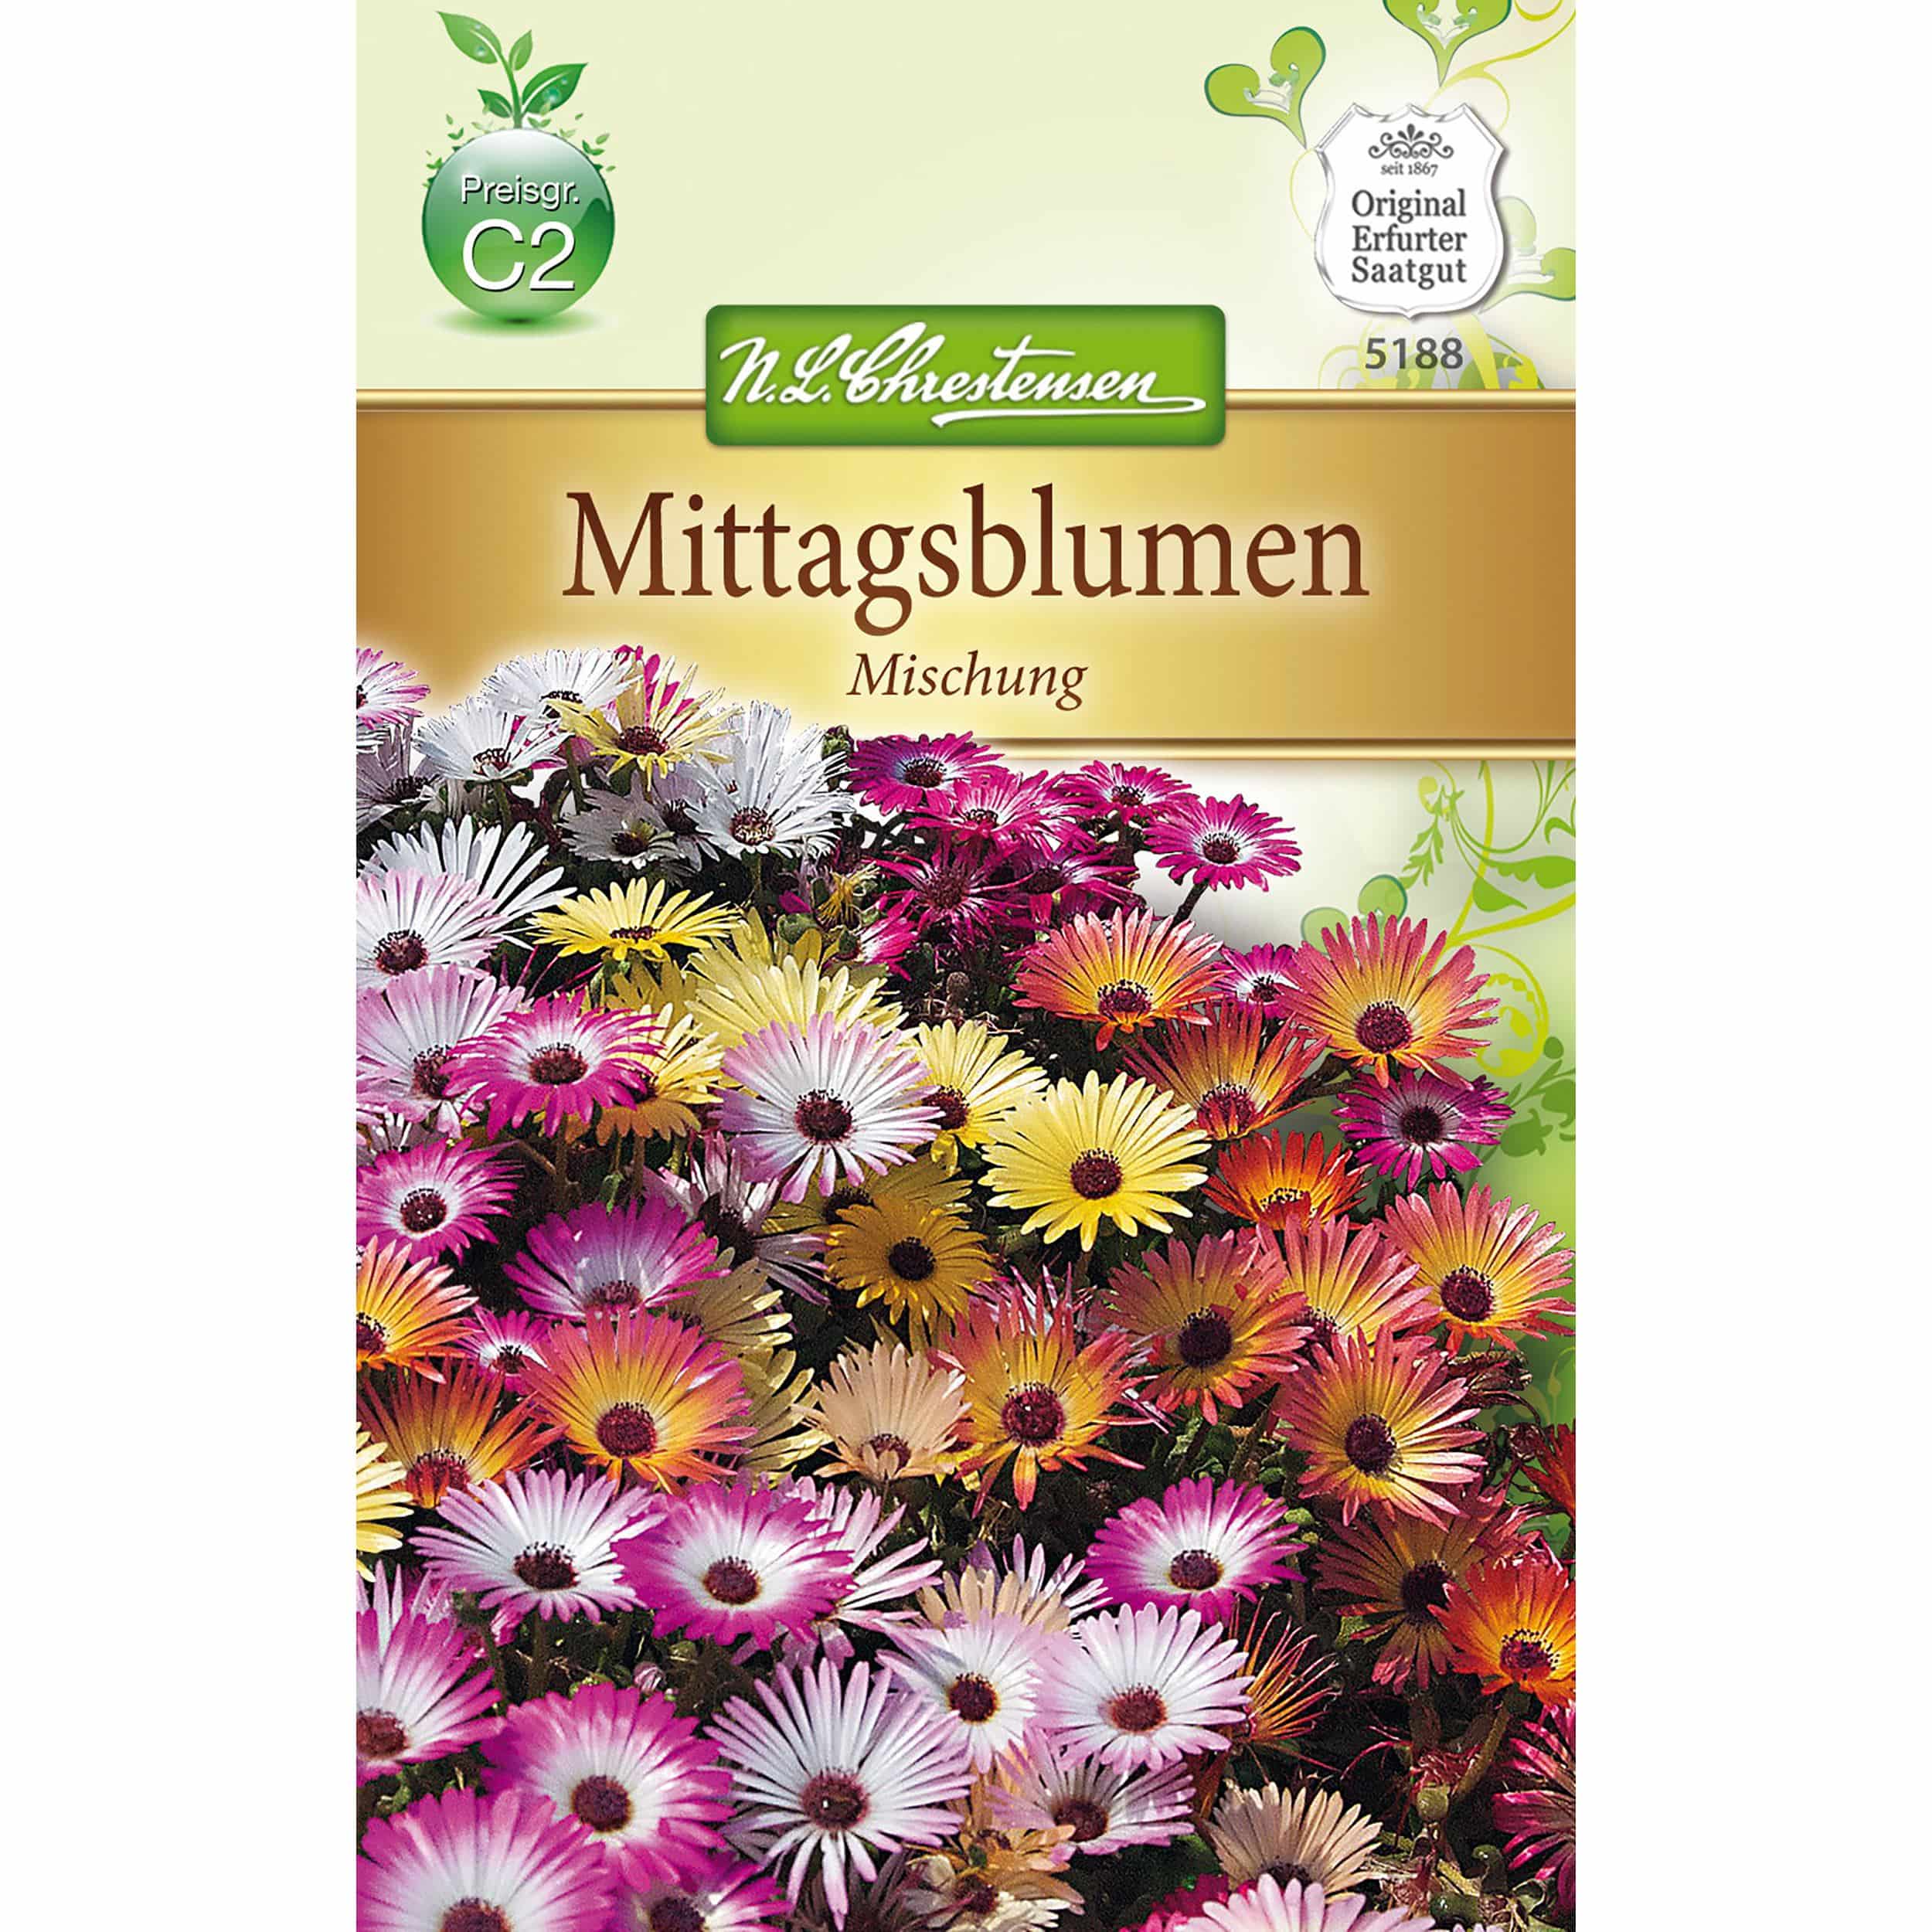 Mesembryanthemum Mittagsblume, Mischung